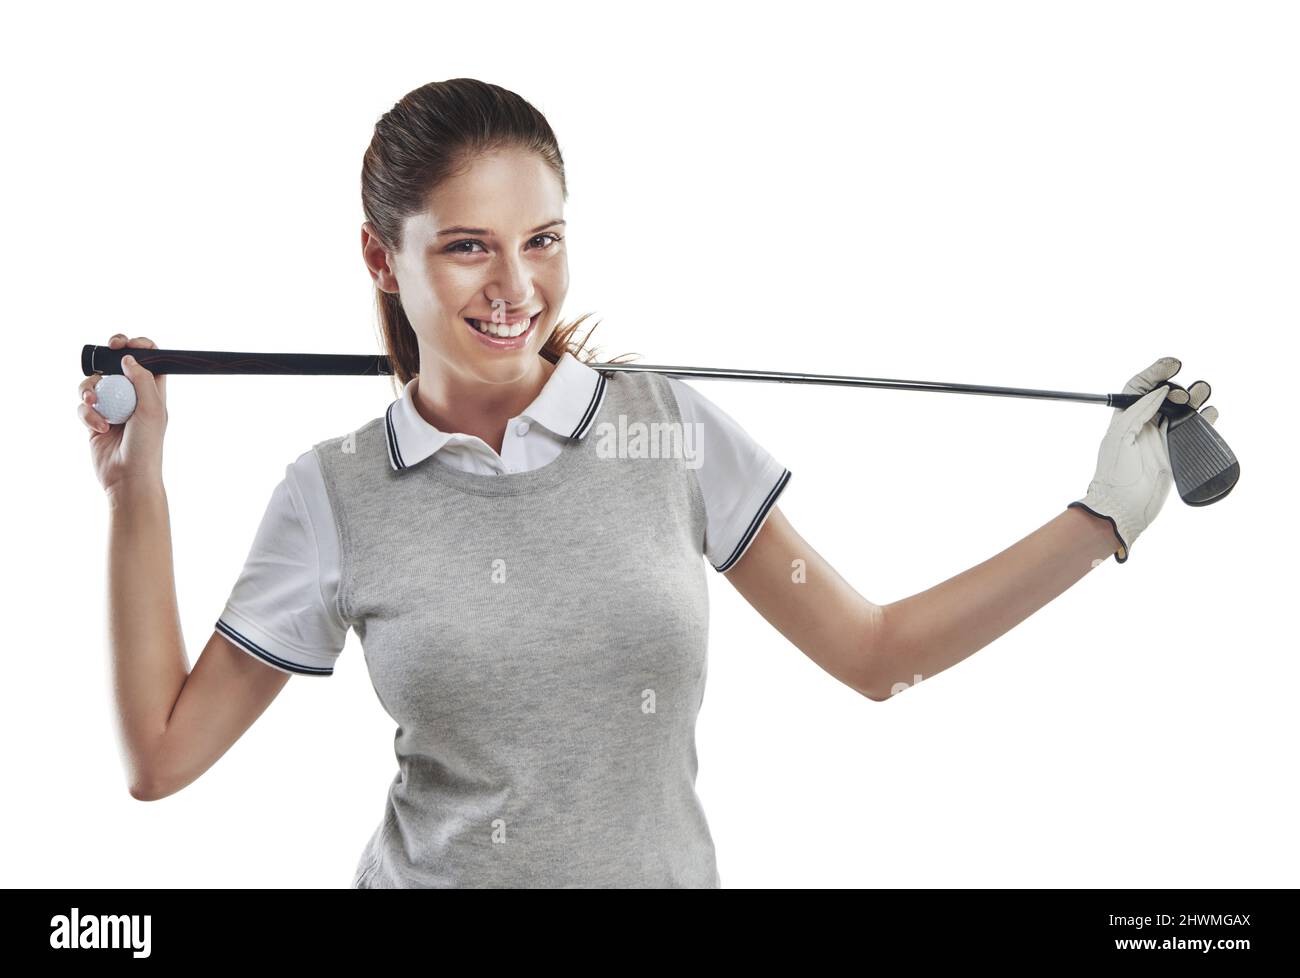 Golf gibt gute Stimmung. Studioaufnahme einer jungen Golferin, die einen Golfschläger hinter ihrem Rücken in Weiß gehalten hat. Stockfoto